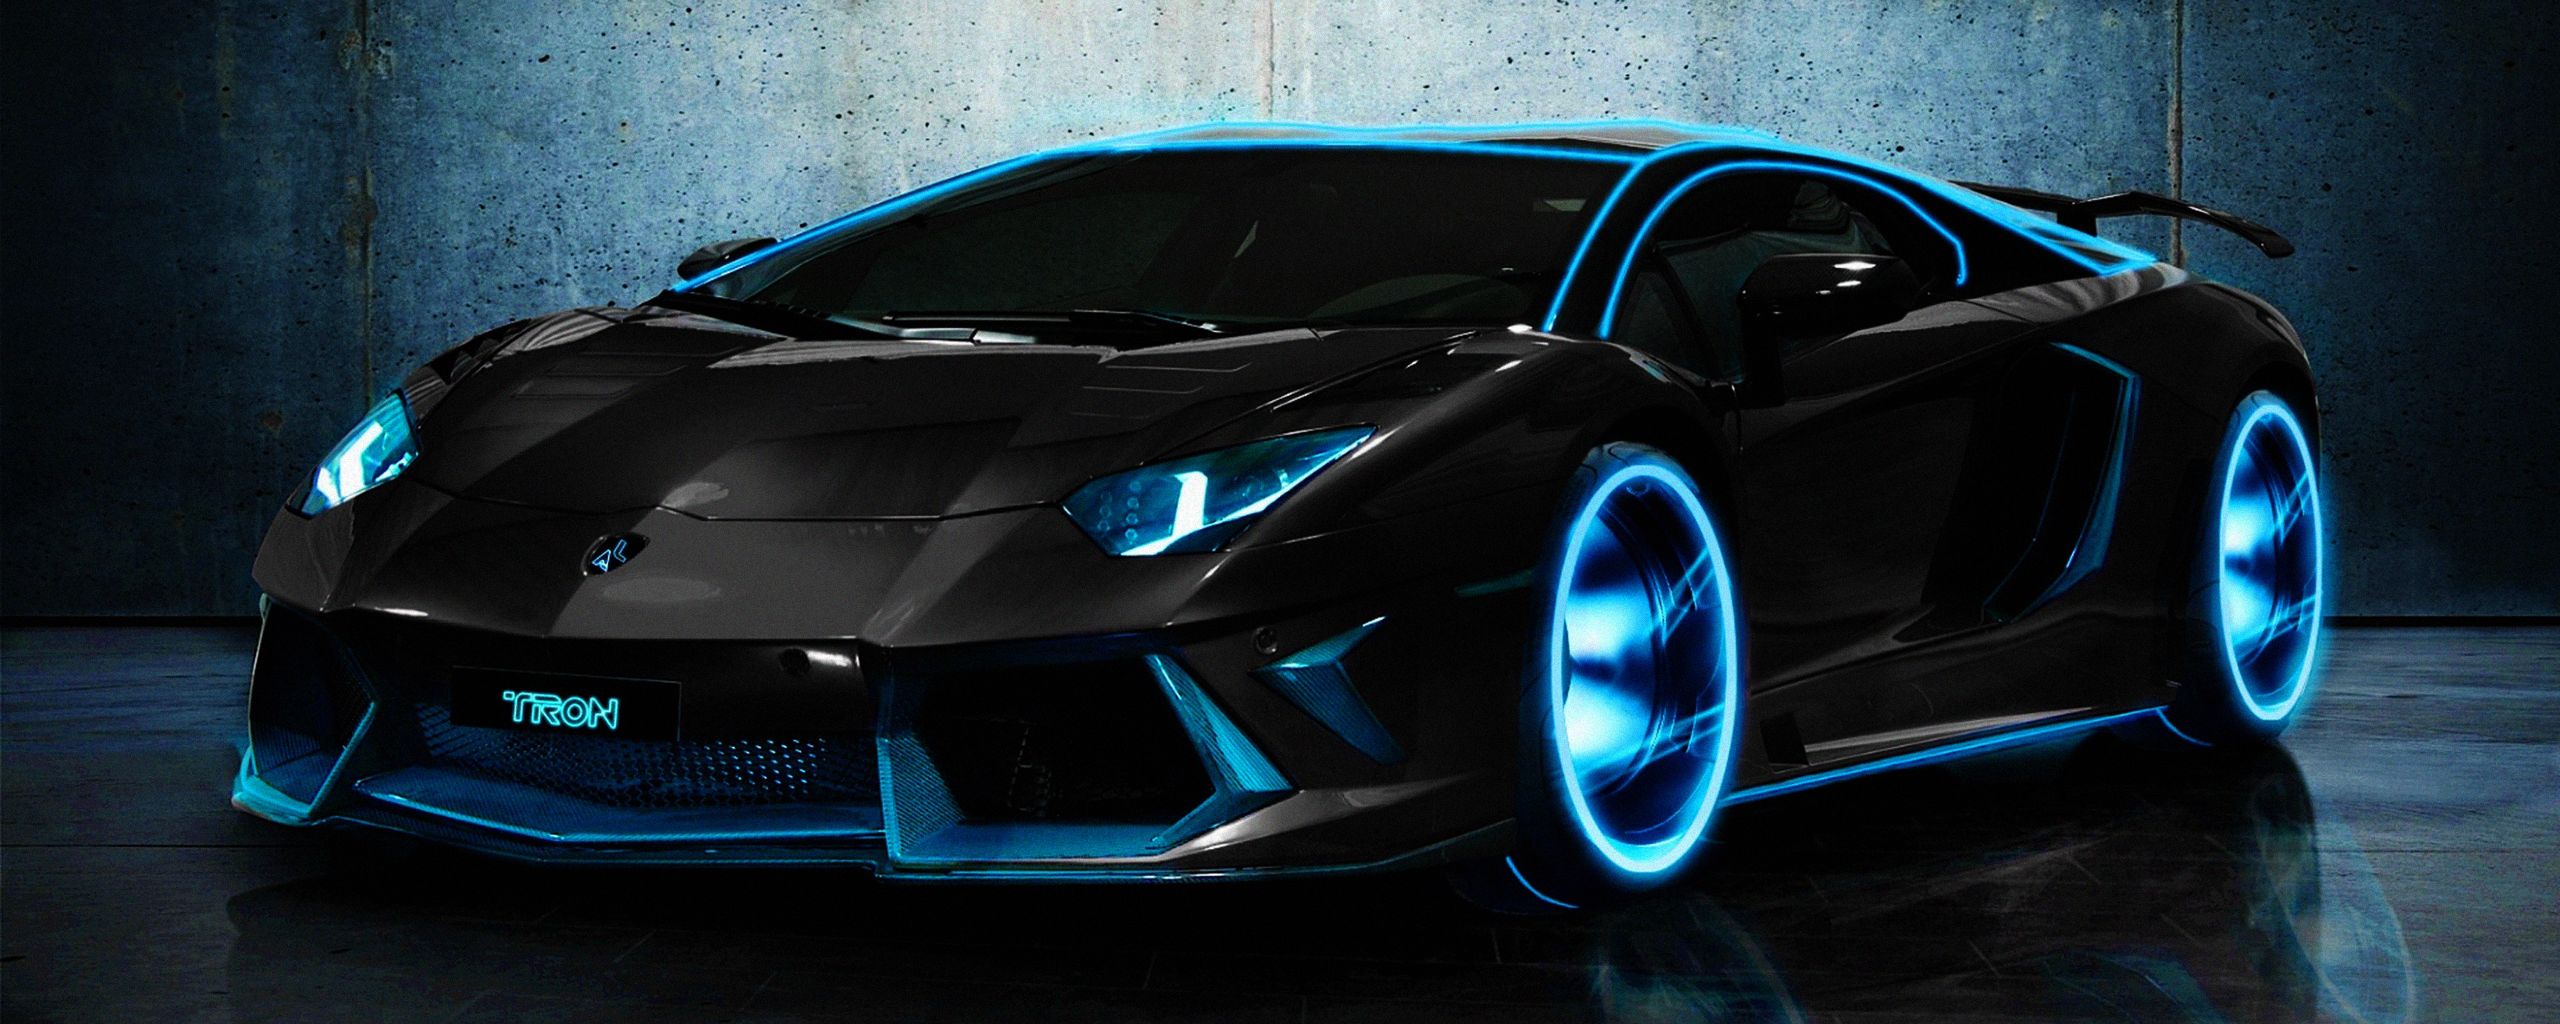 1008 Fondos de pantalla de Lamborghini HD | Imágenes de fondo